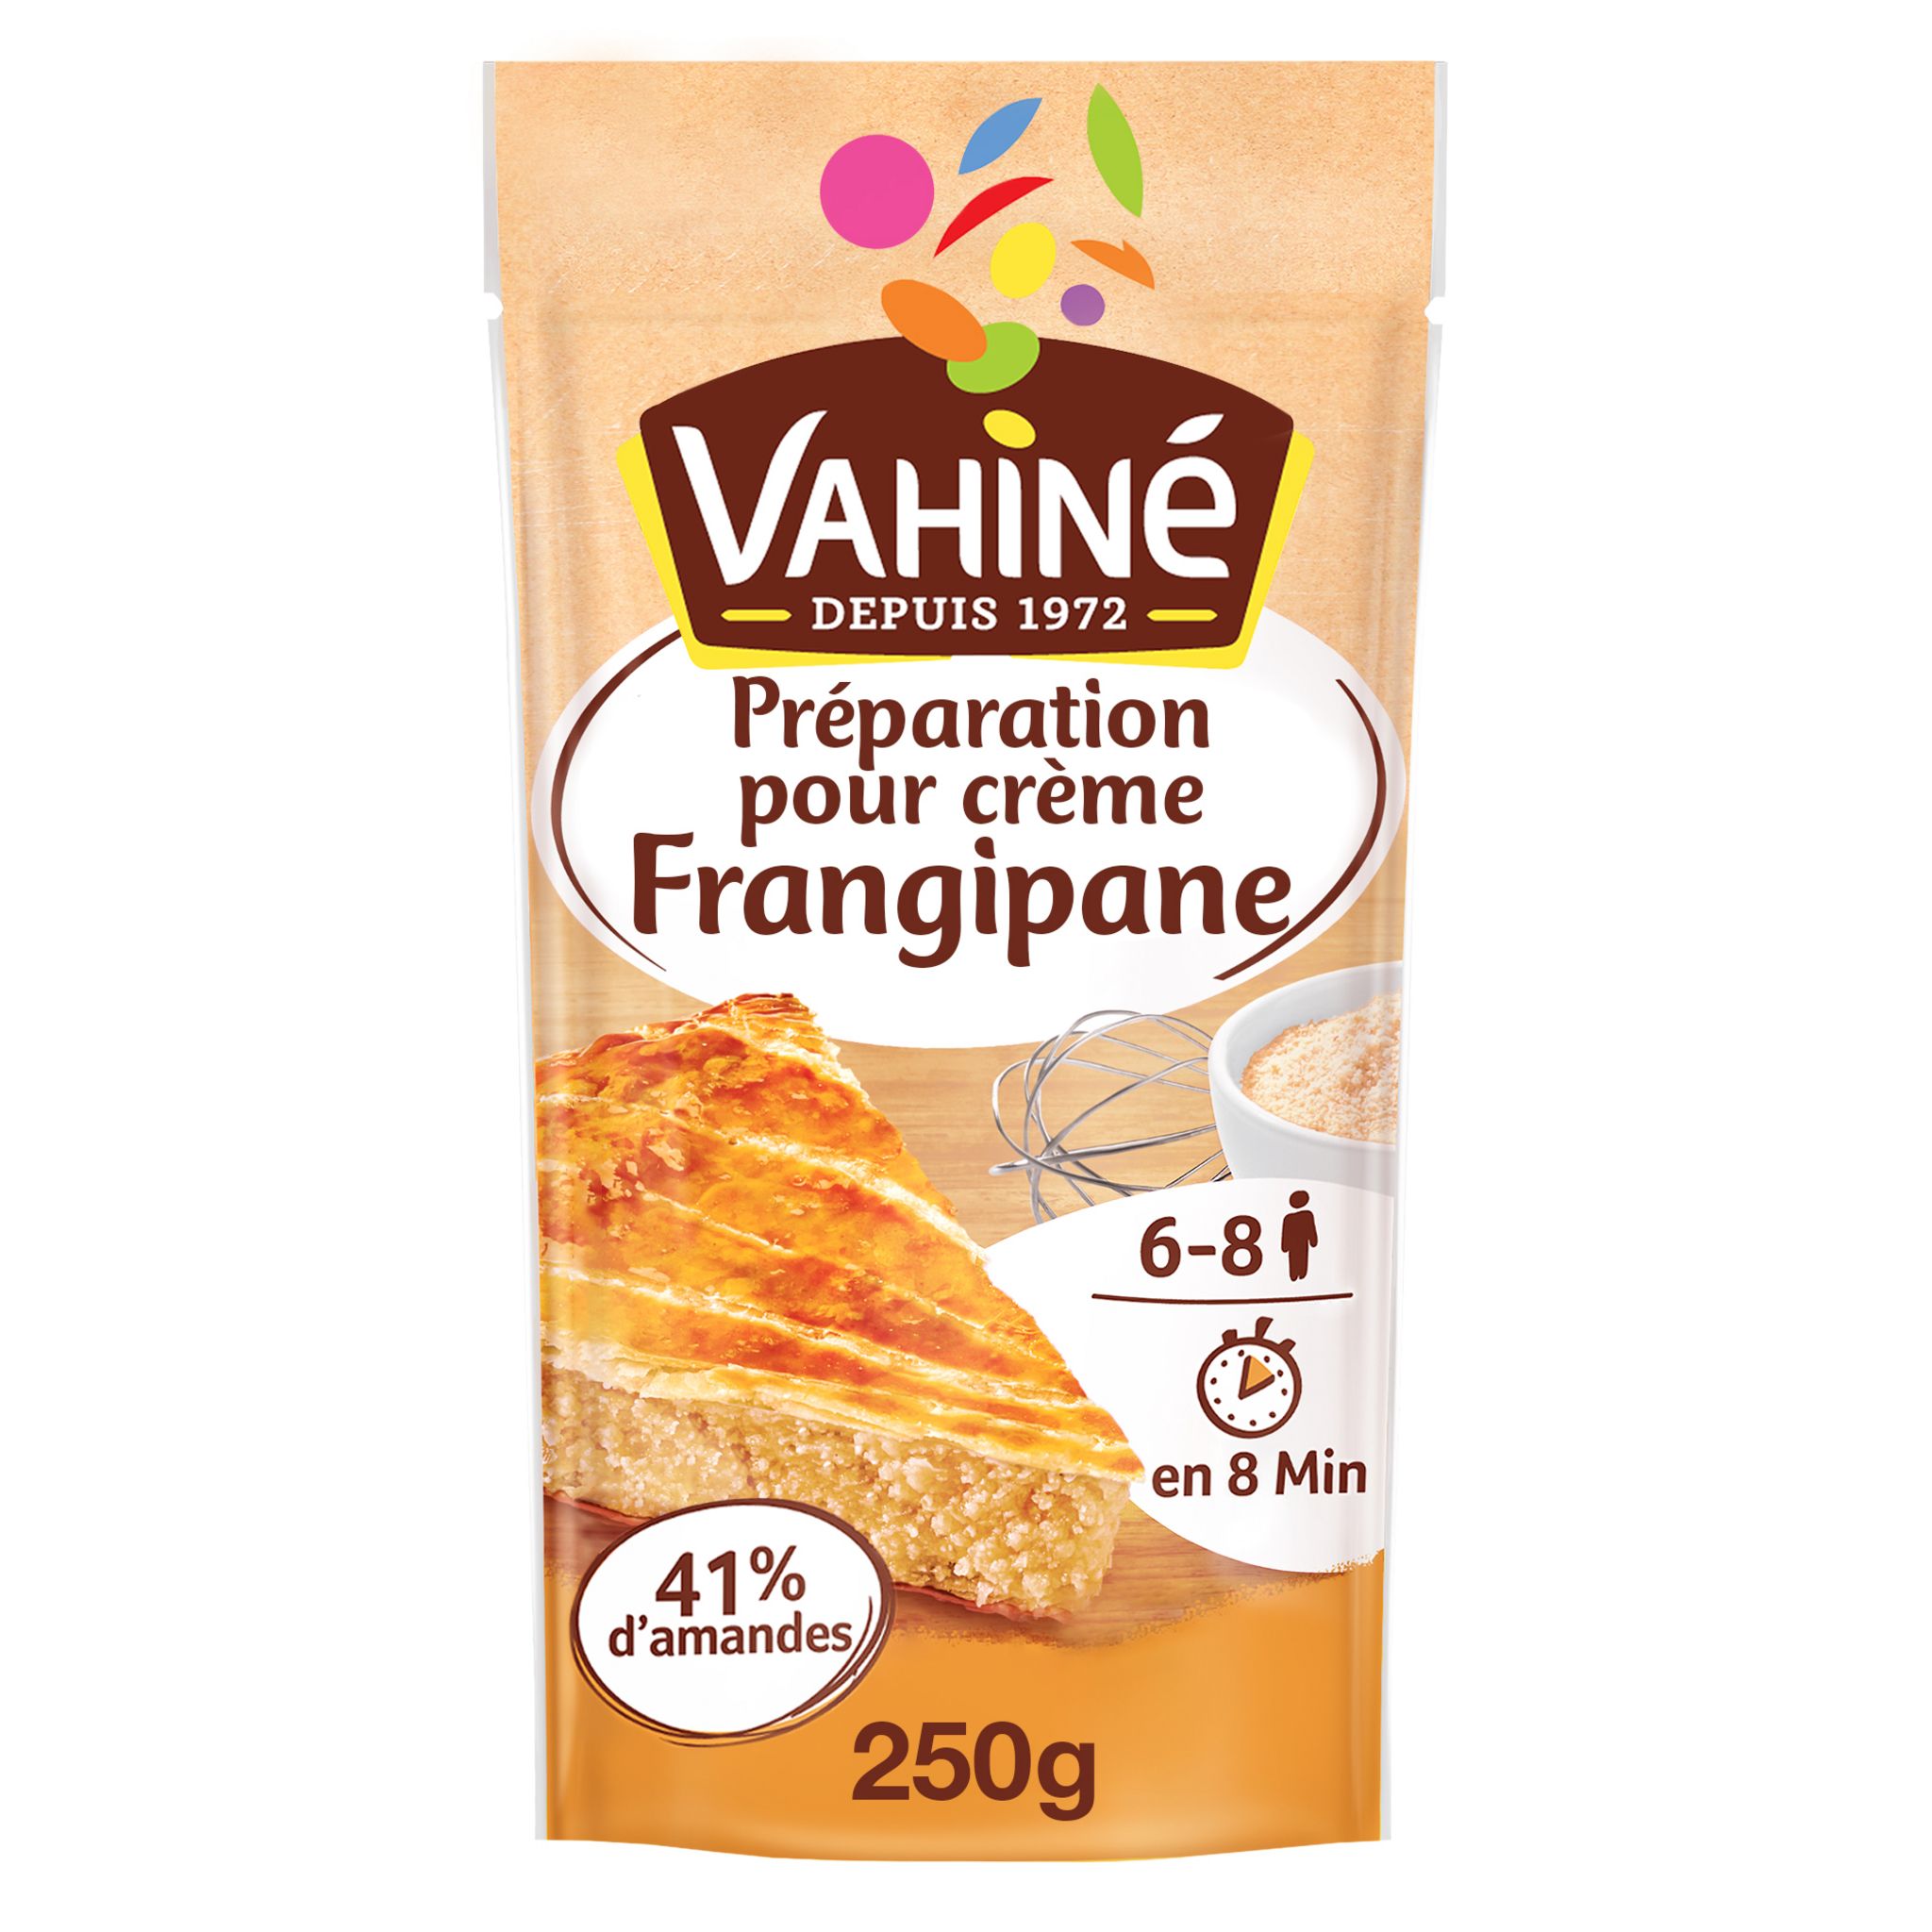 VAHINE Kit galette des rois amande 187g+34% offerts pas cher 